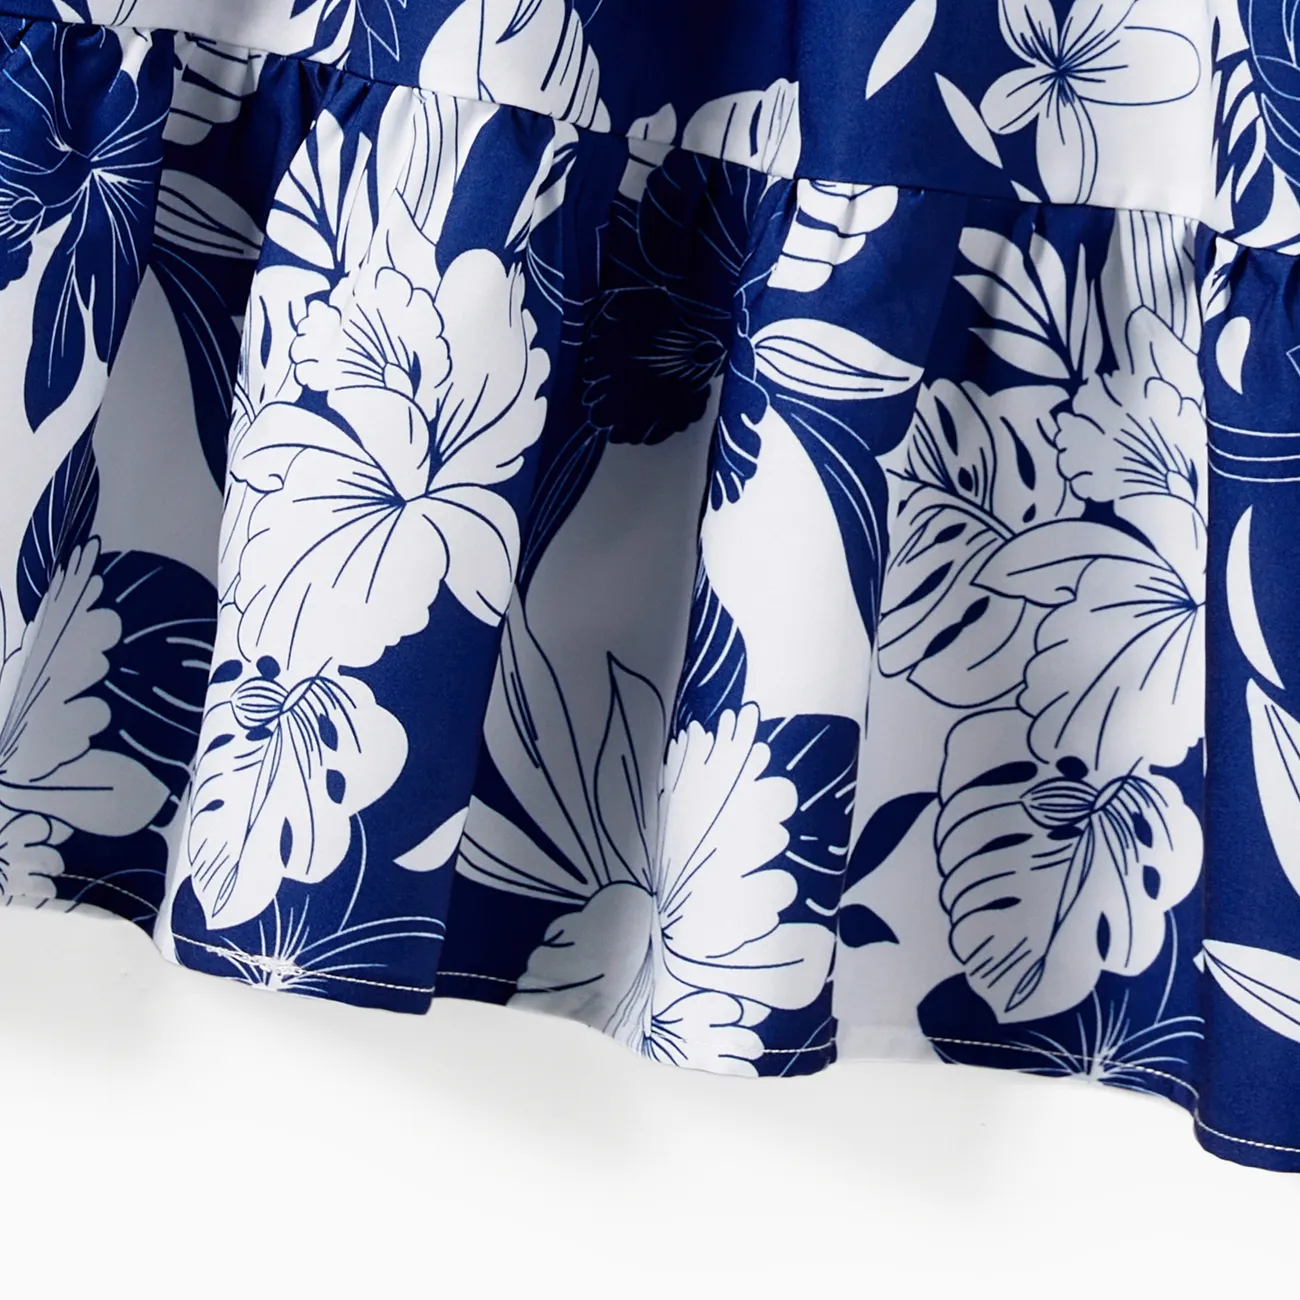 Familien-Looks Tropische Pflanzen und Blumen Tanktop Familien-Outfits Sets Königsblau big image 1